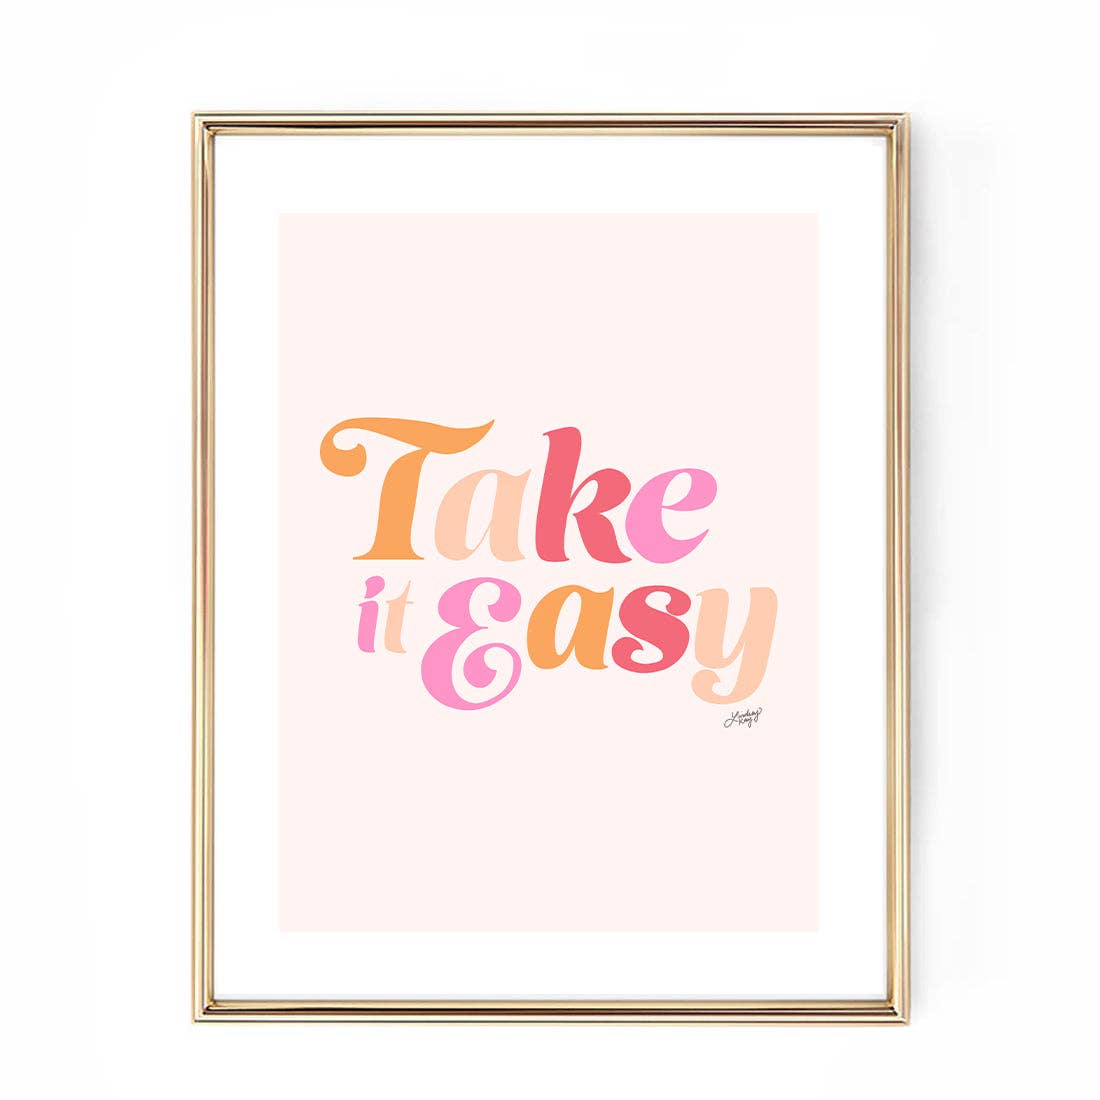 Take it Easy - Art Print